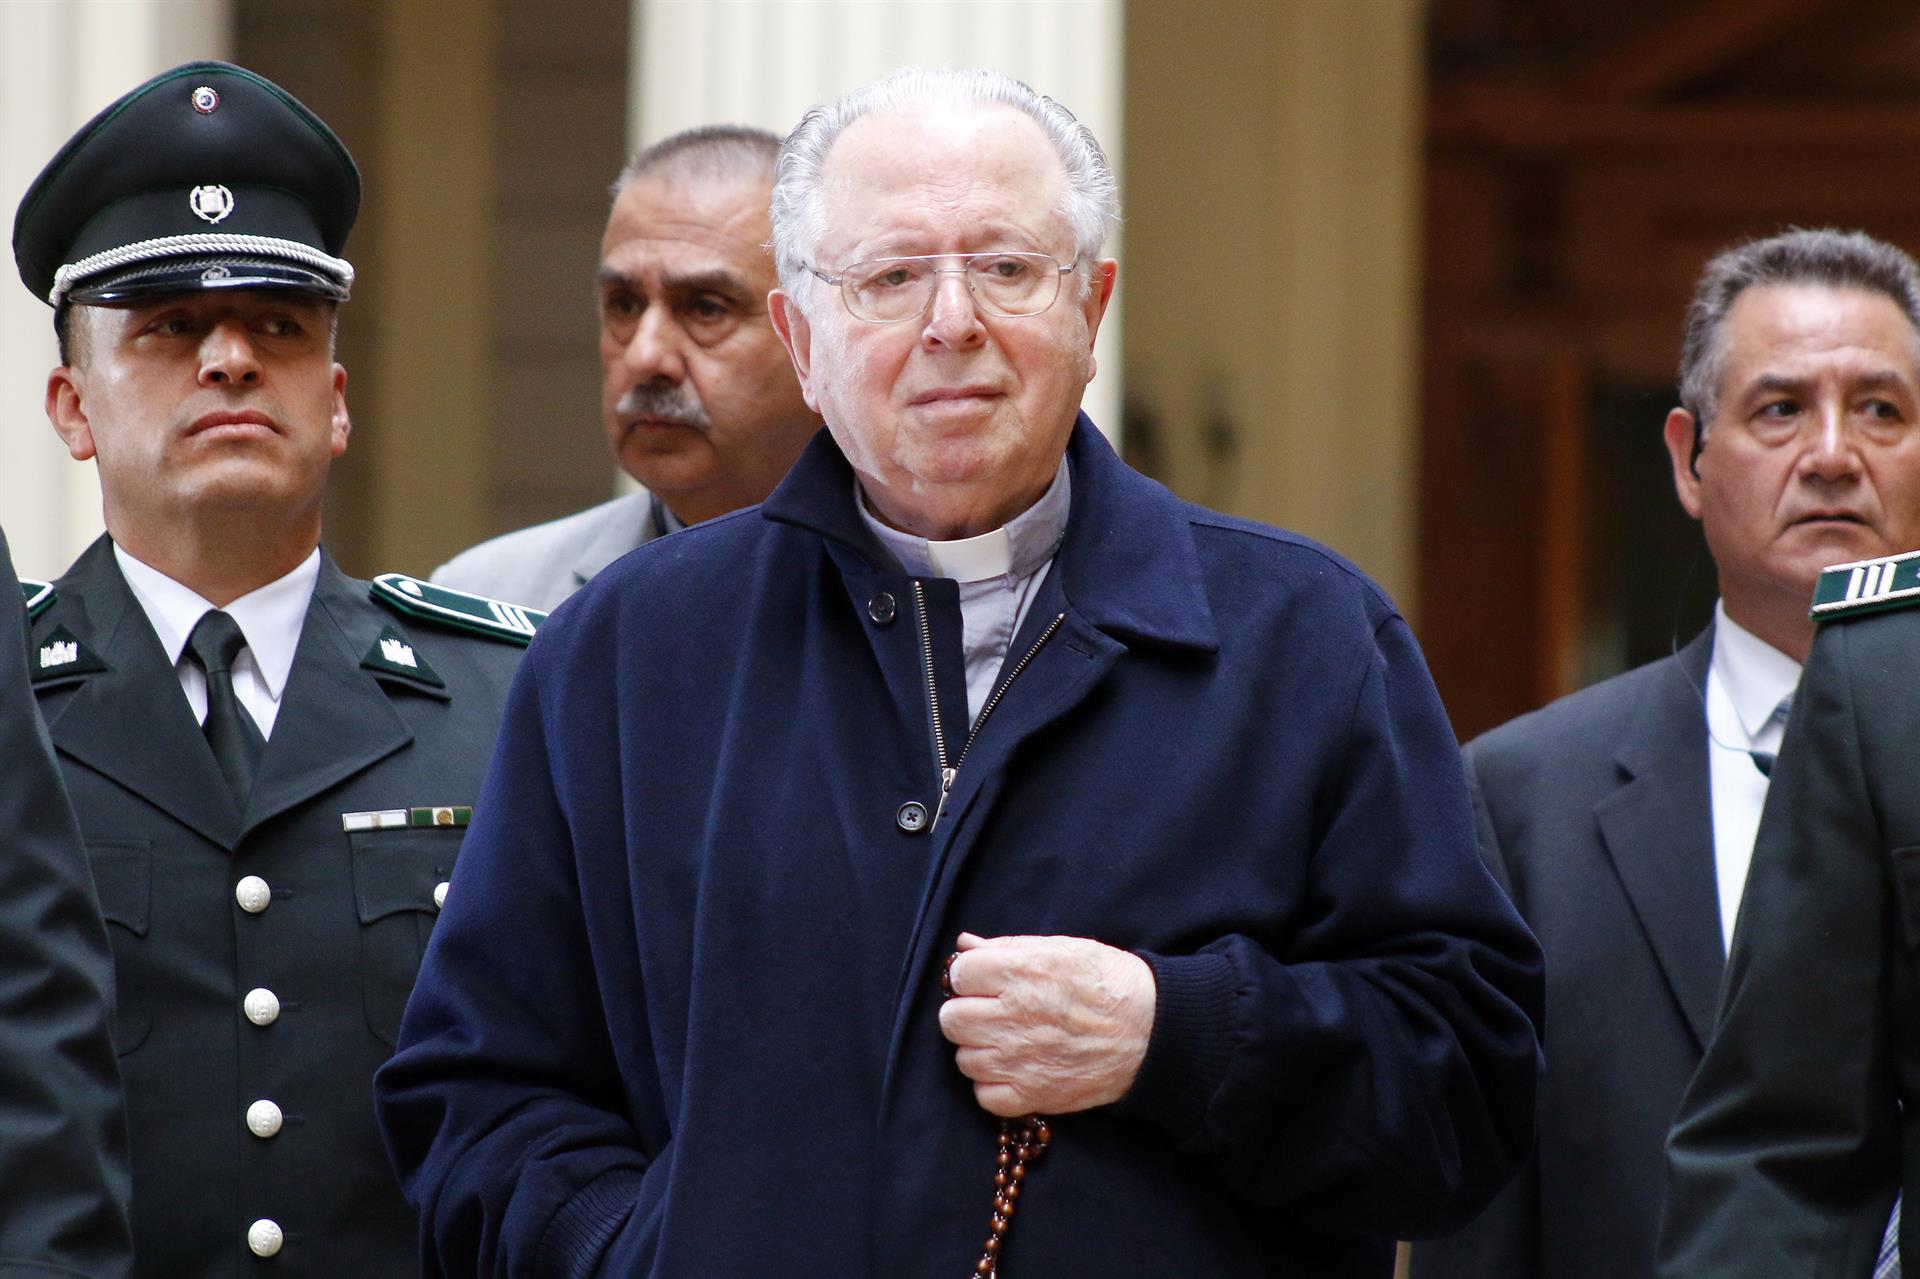 Karadima fue expulsado del sacerdocio por el Papa Francisco en 2018.